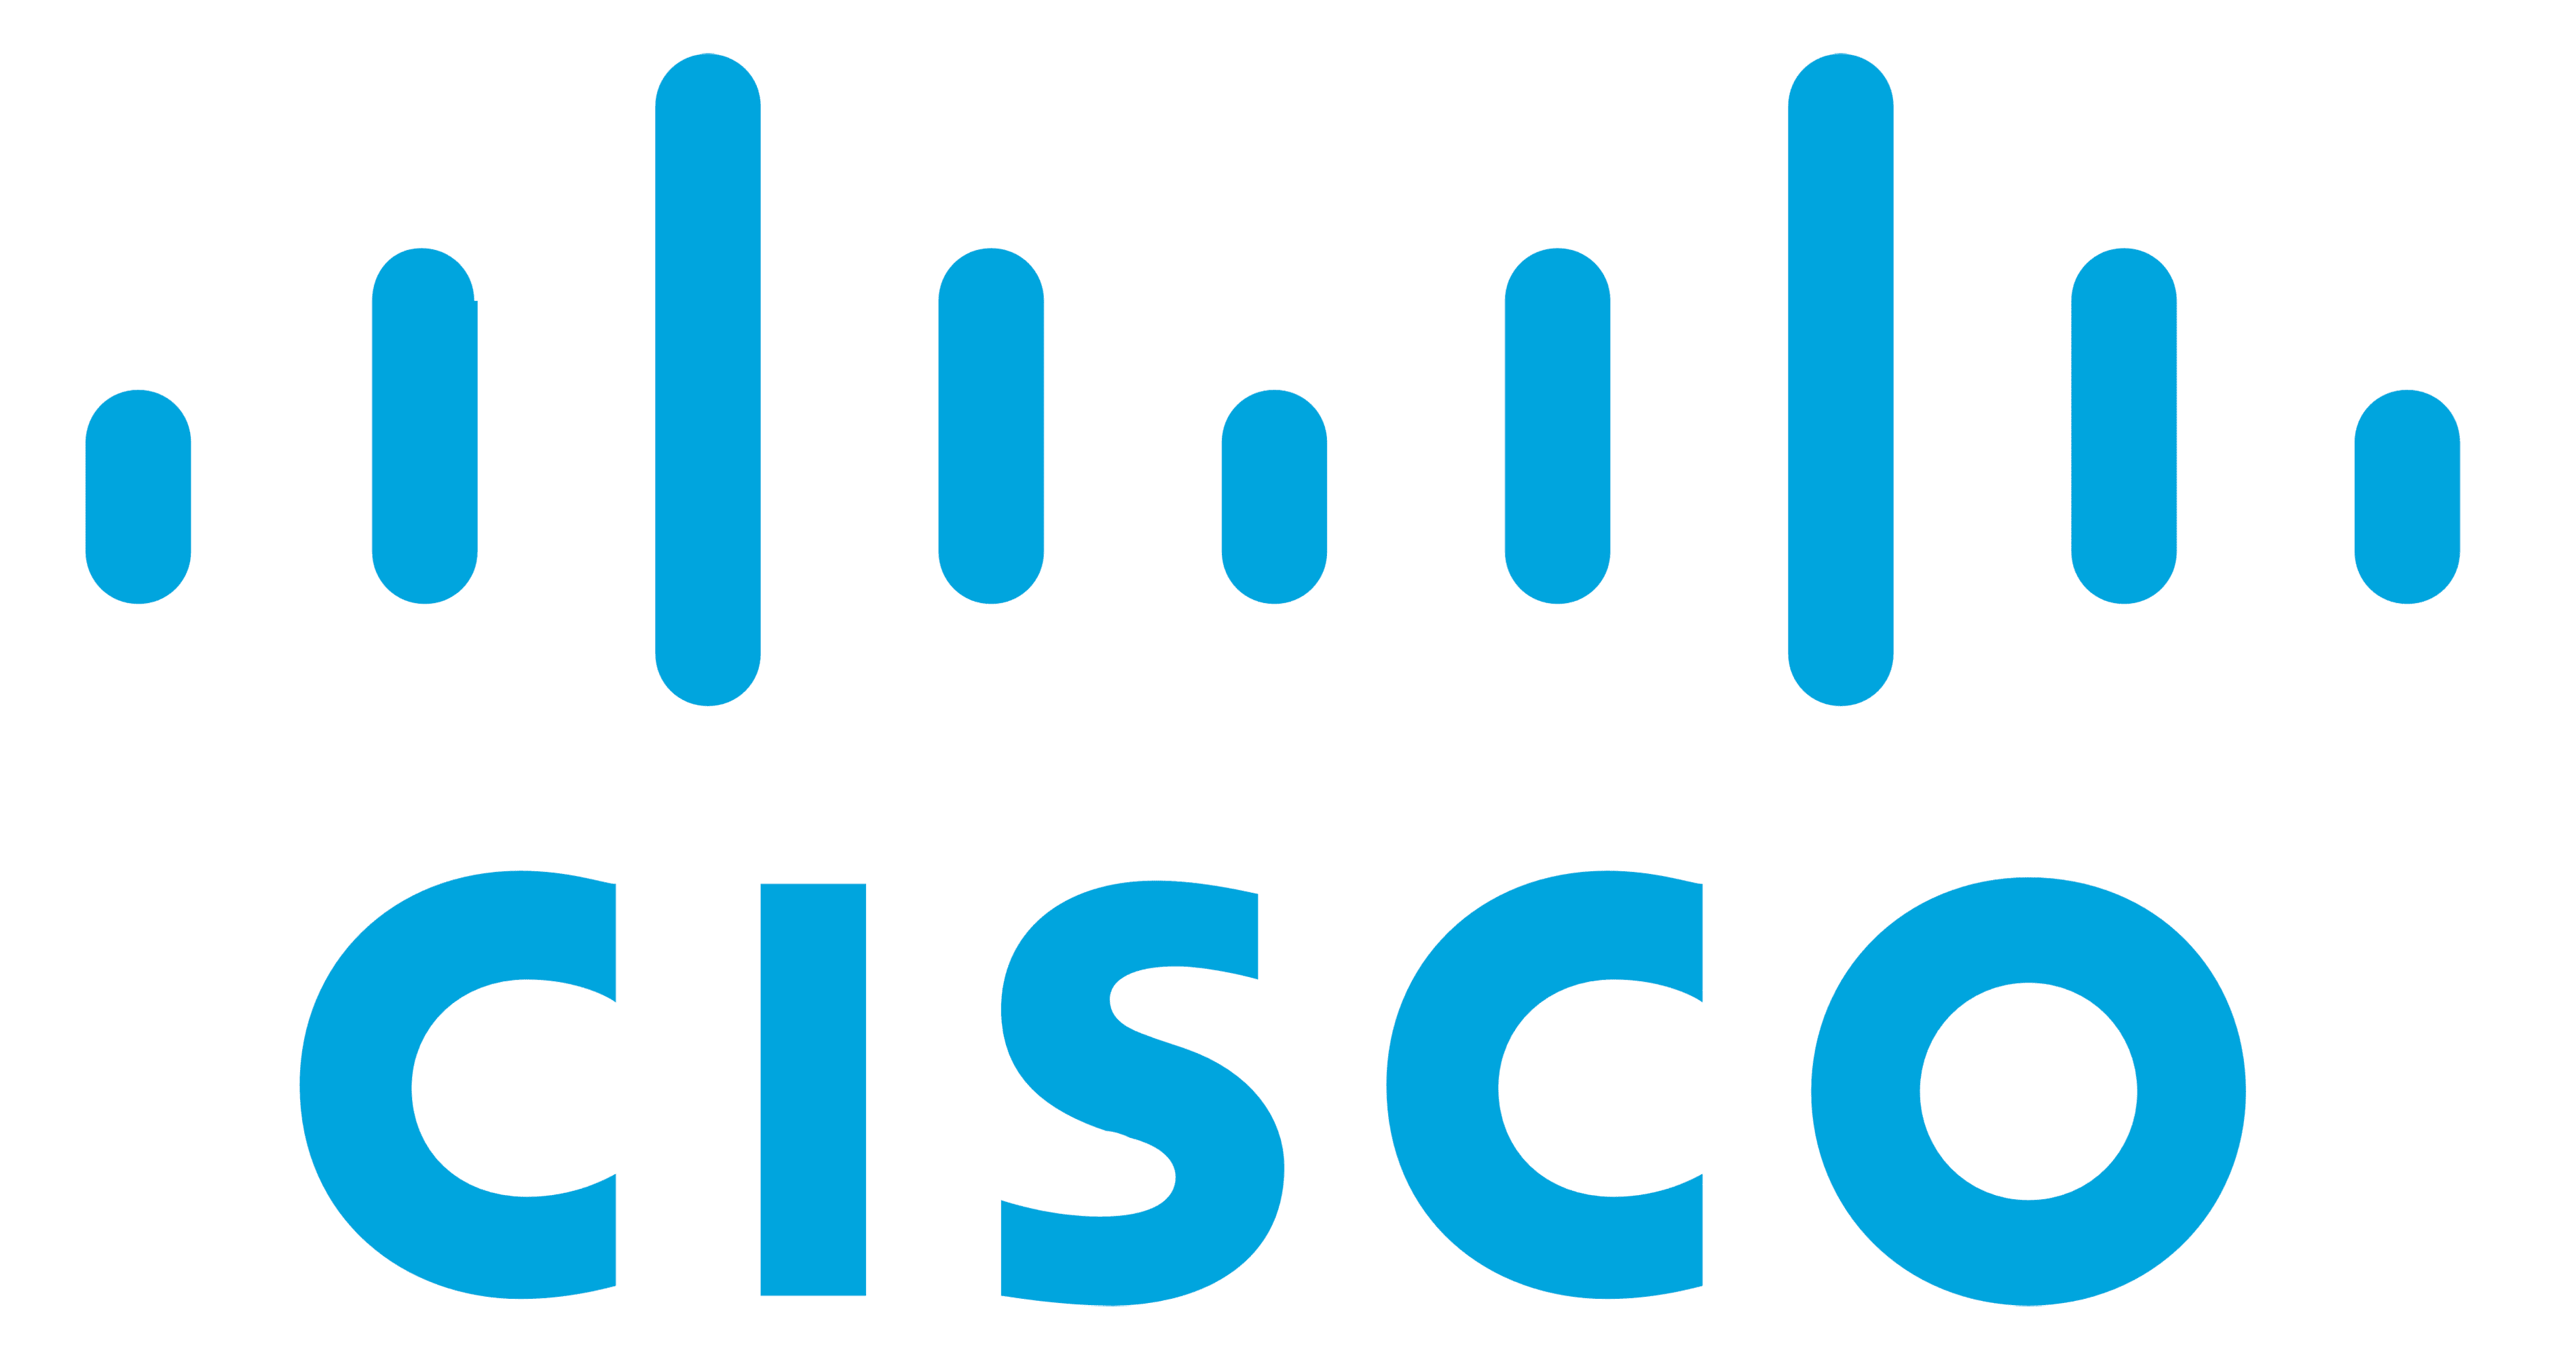 logo-Cisco